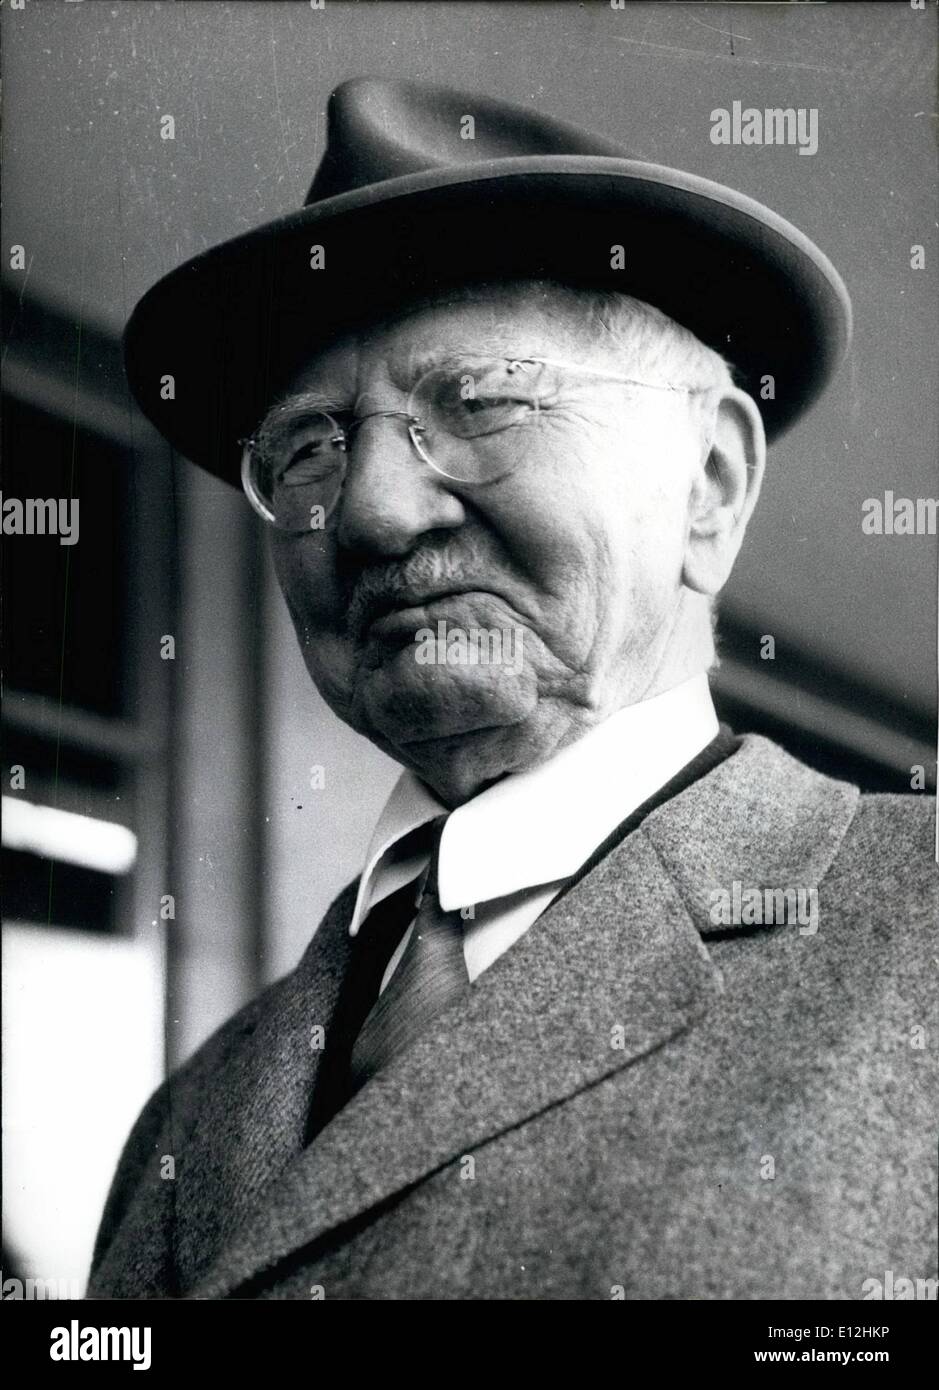 04 janvier 2012 - Hjalmar Schacht (Reichsbankpresident) sous Hitler à partir de 1933 à travers 1939 a été en camp de concentration durant la DEUXIÈME GUERRE MONDIALE Banque D'Images